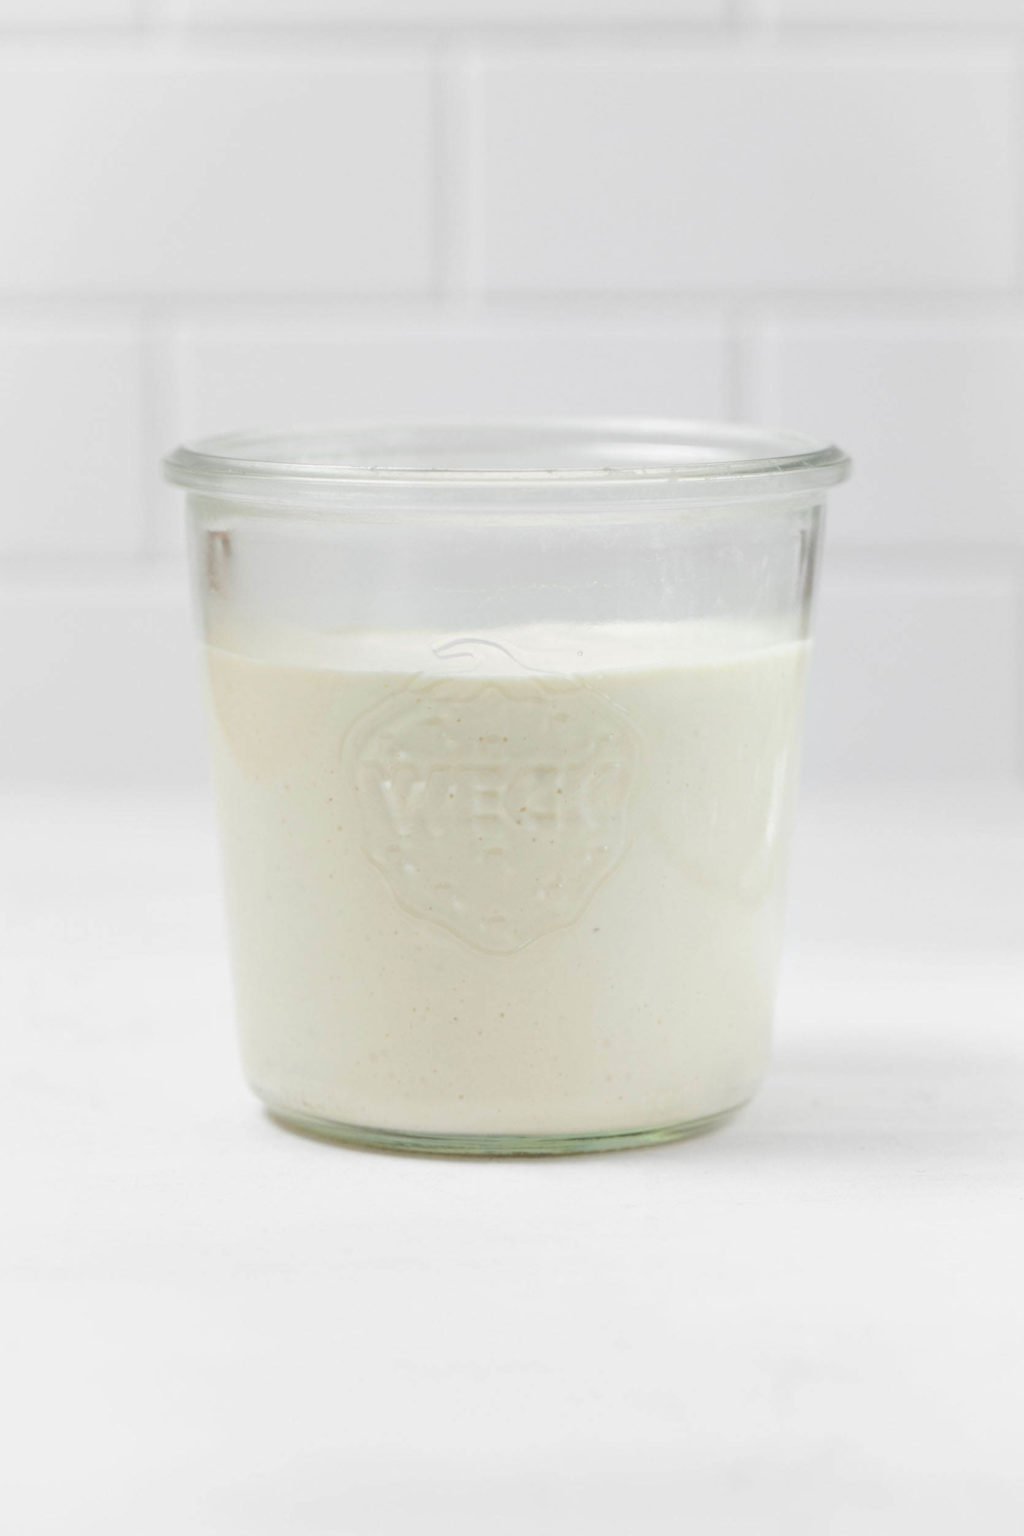 Un tarro de albañil contiene crema agria vegana de color blanco cremoso.  Se apoya sobre una superficie blanca.